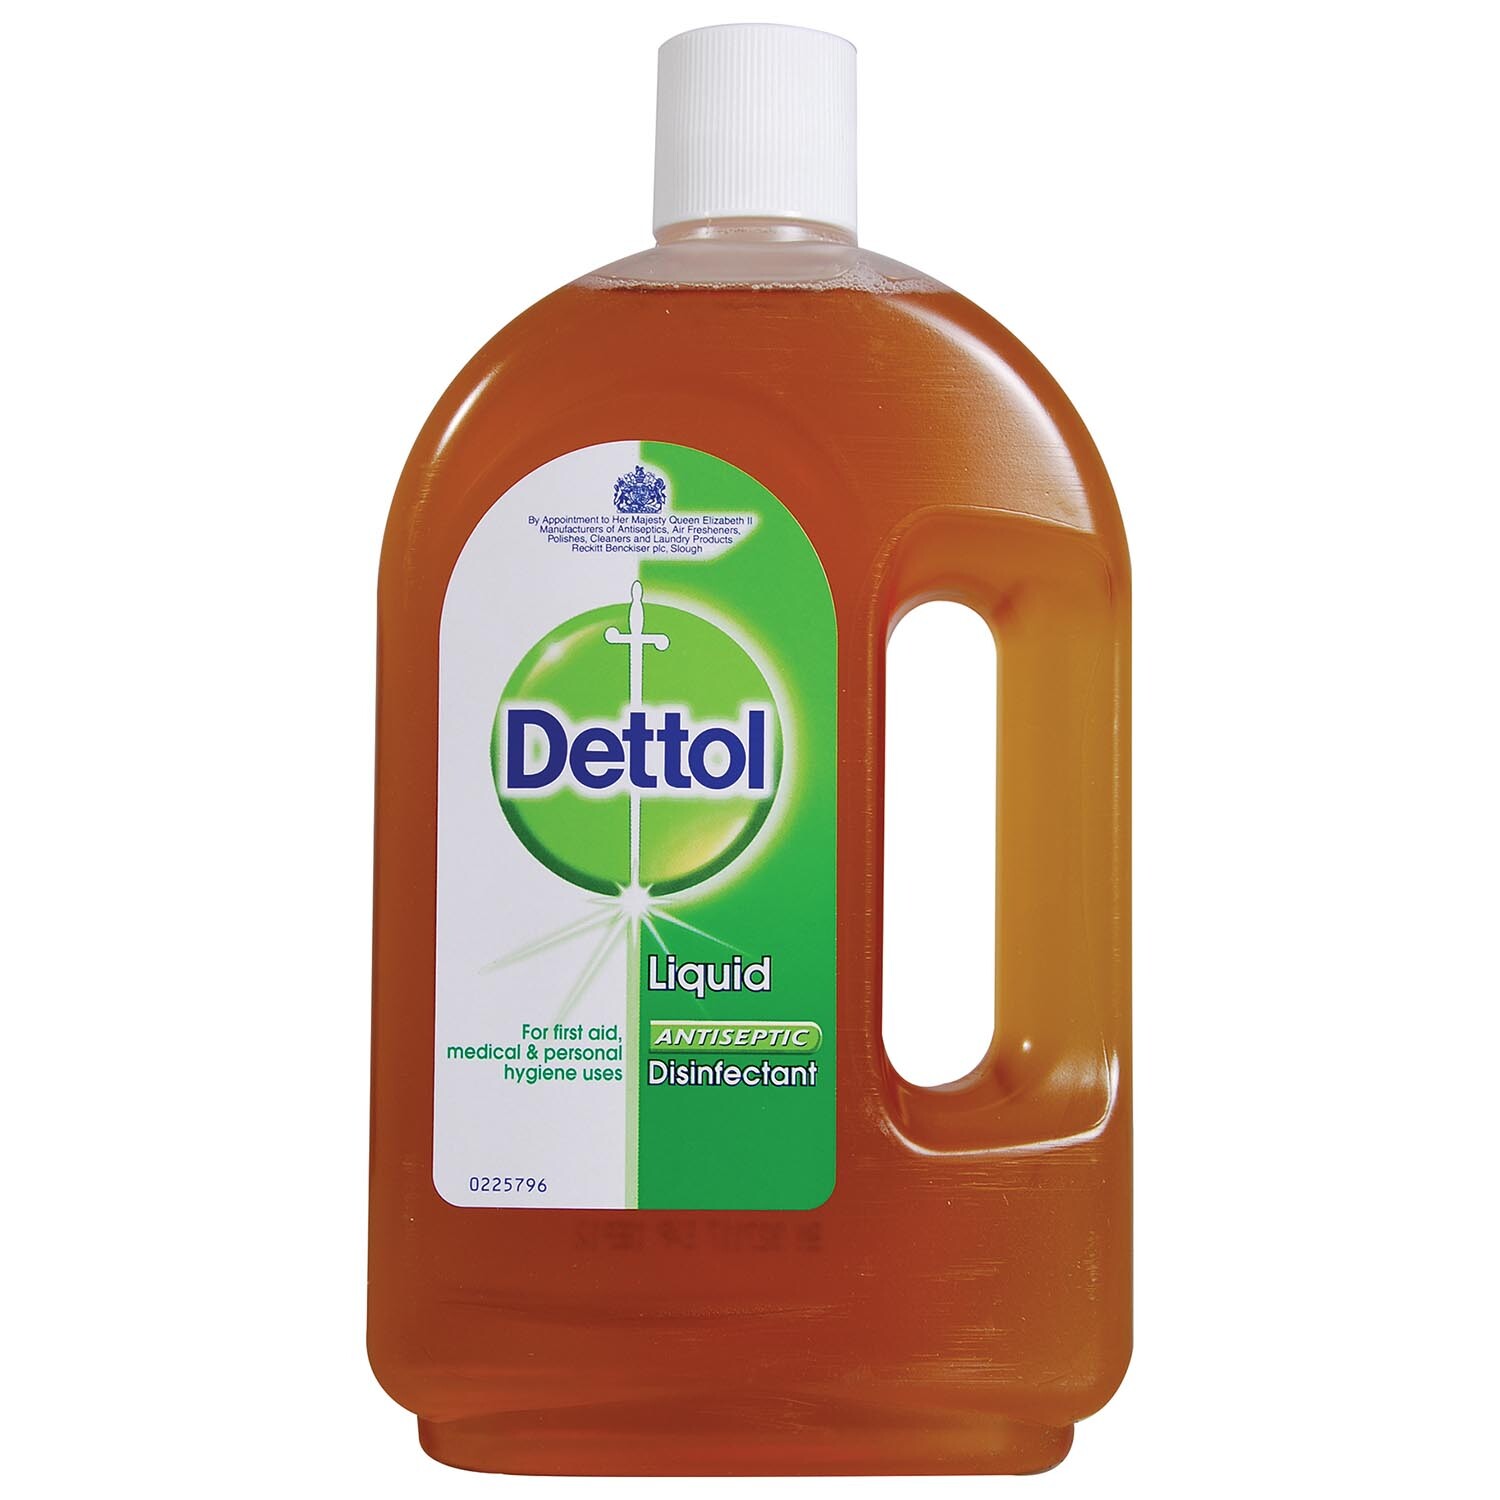 Dettol Disinfectant Liquid 750ml Image